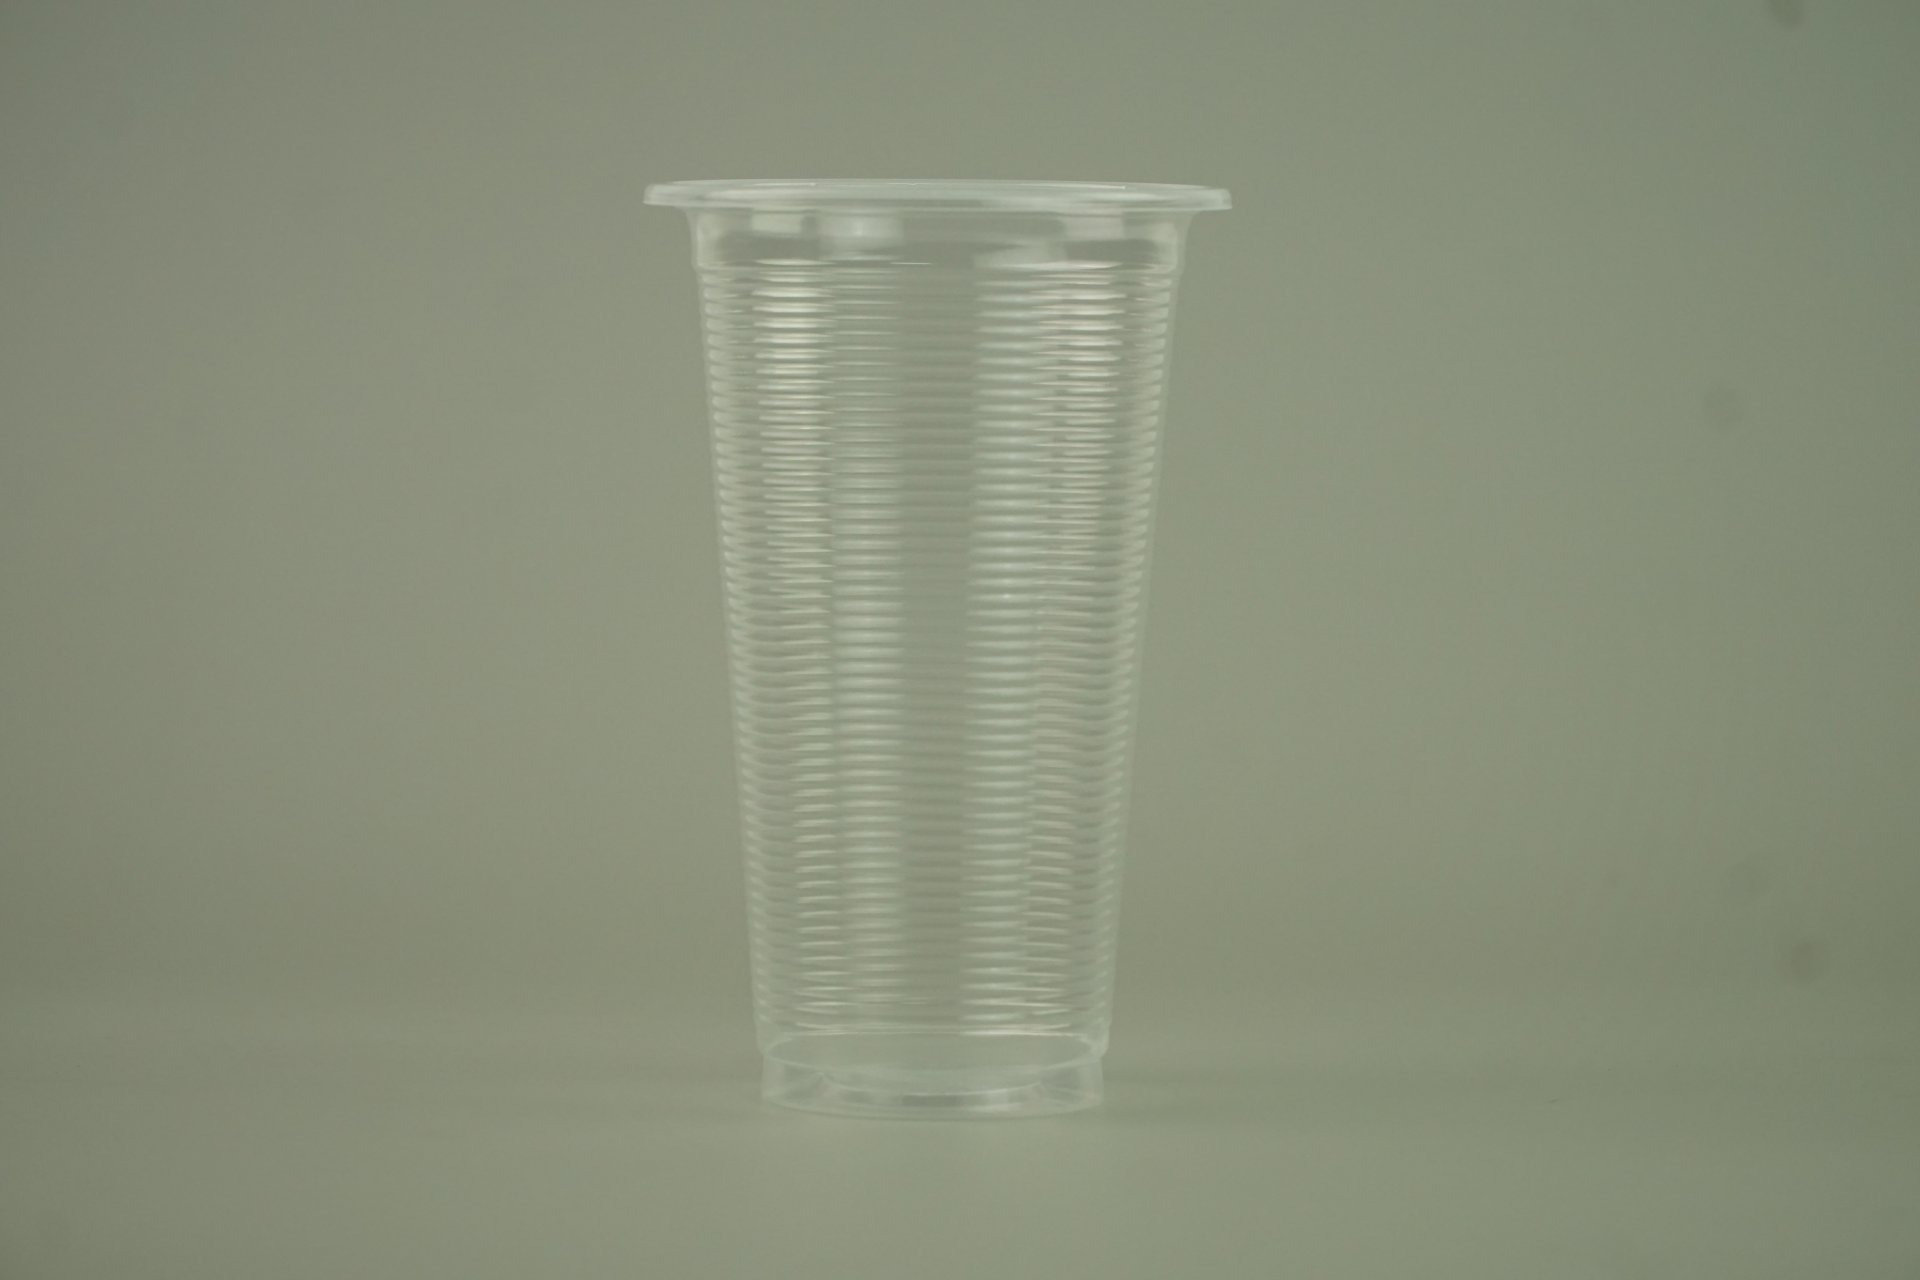 แก้วน้ำ 20 ออนซ์ แก้วพลาสติก PP ลอนใส รุ่นประหยัด ปาก95mm. ขนาด 9.5x15 x6 cm.